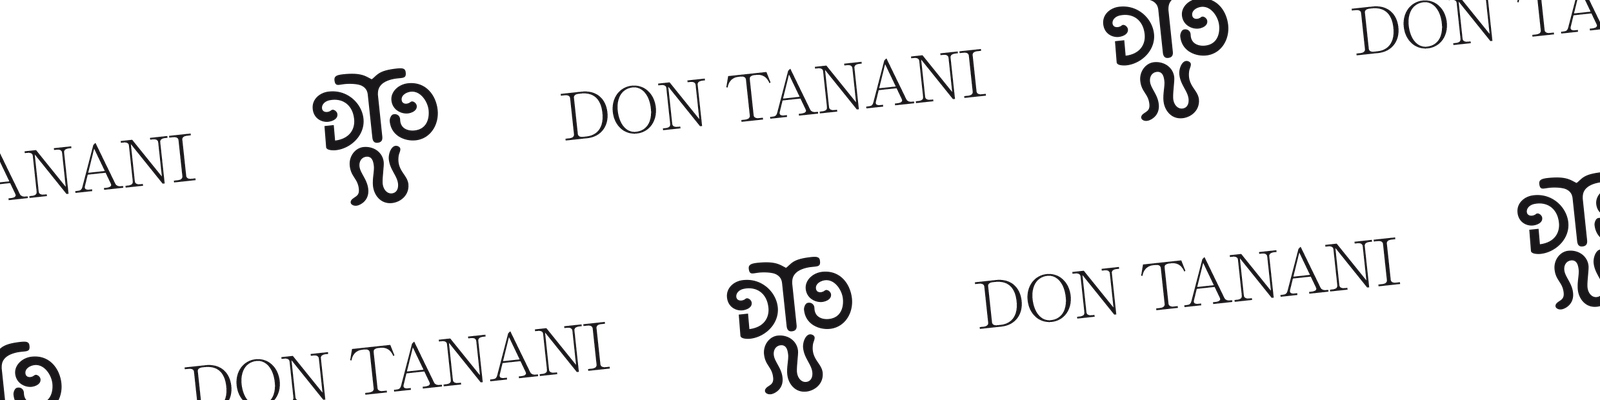 Don Tanani